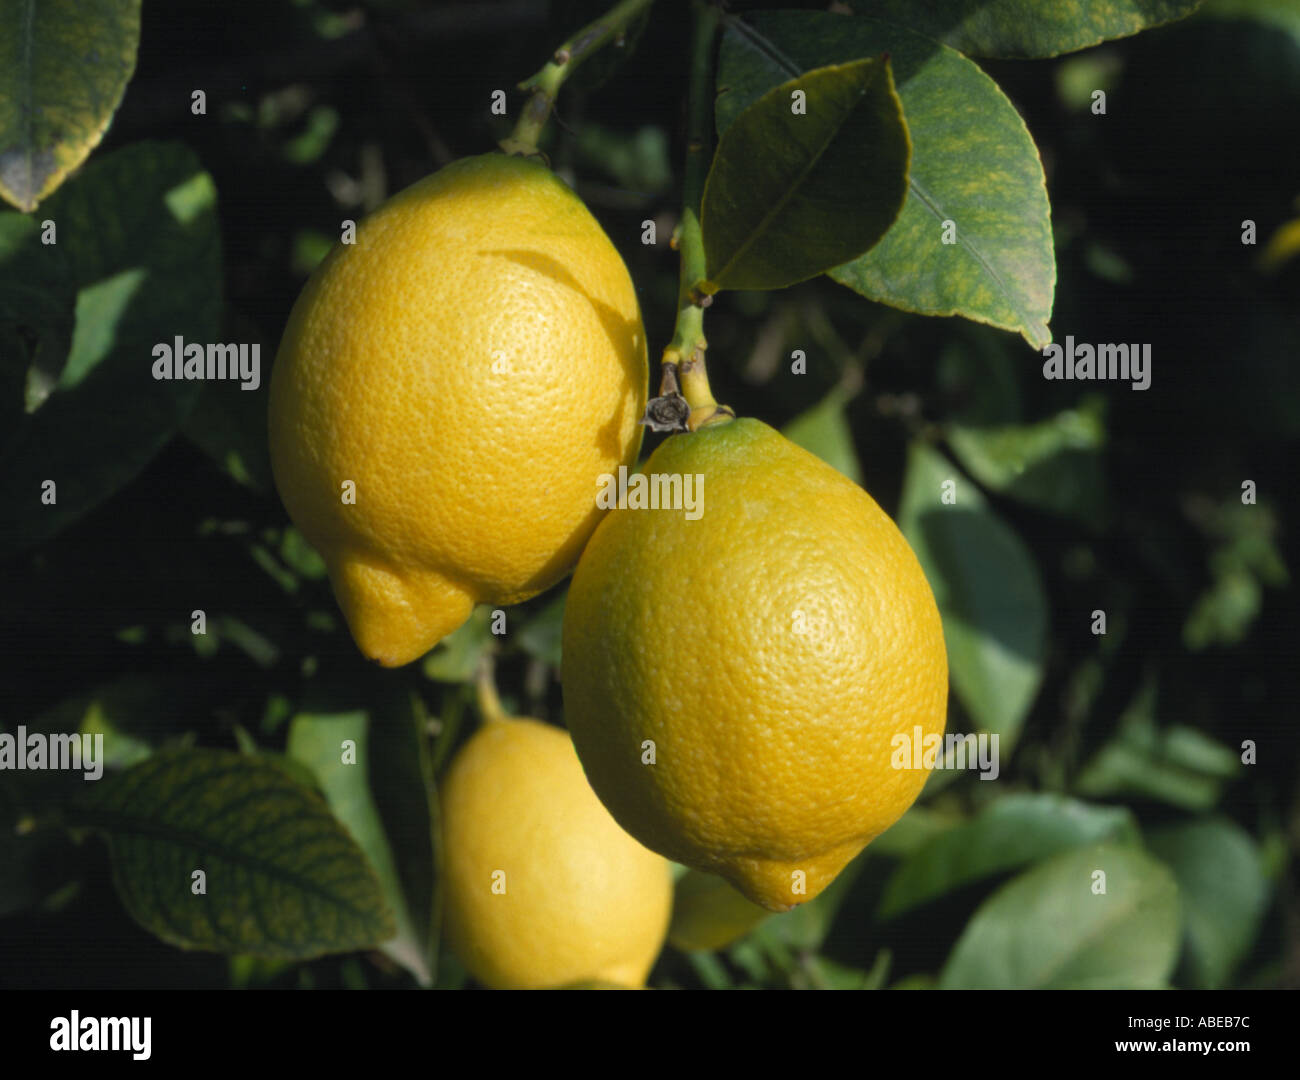 Lemons Citrus limon ripe fruit on the tree Stock Photo